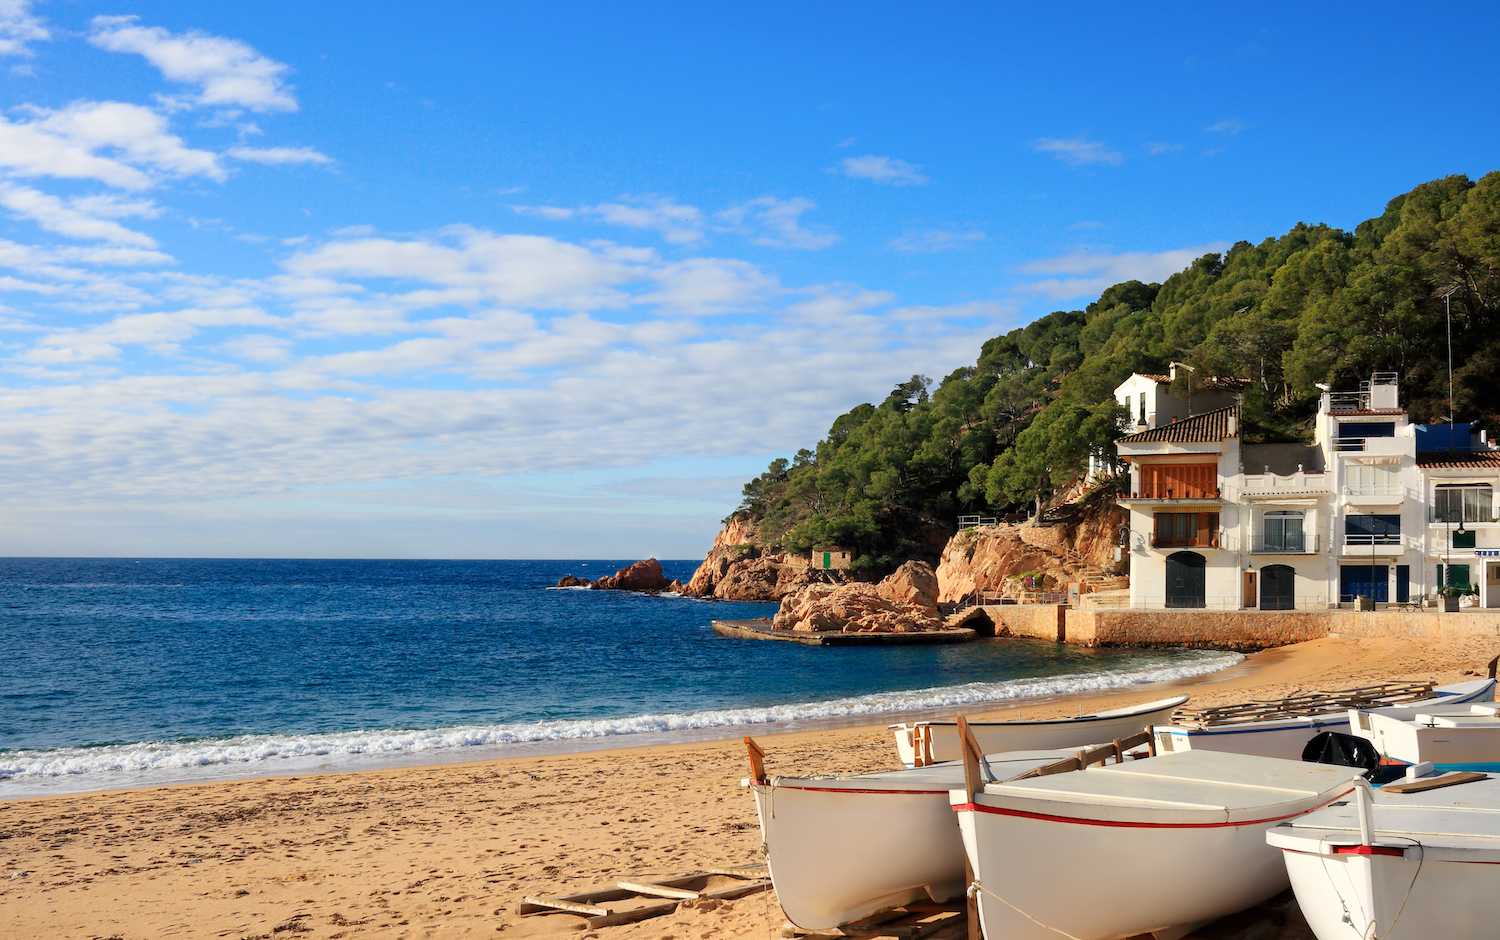 Топ 3 лучших прибрежных городов Испании для жизни с семьей. Купить или арендовать дом в Кастельдефельс, риэлторское агентство Top House Realty.